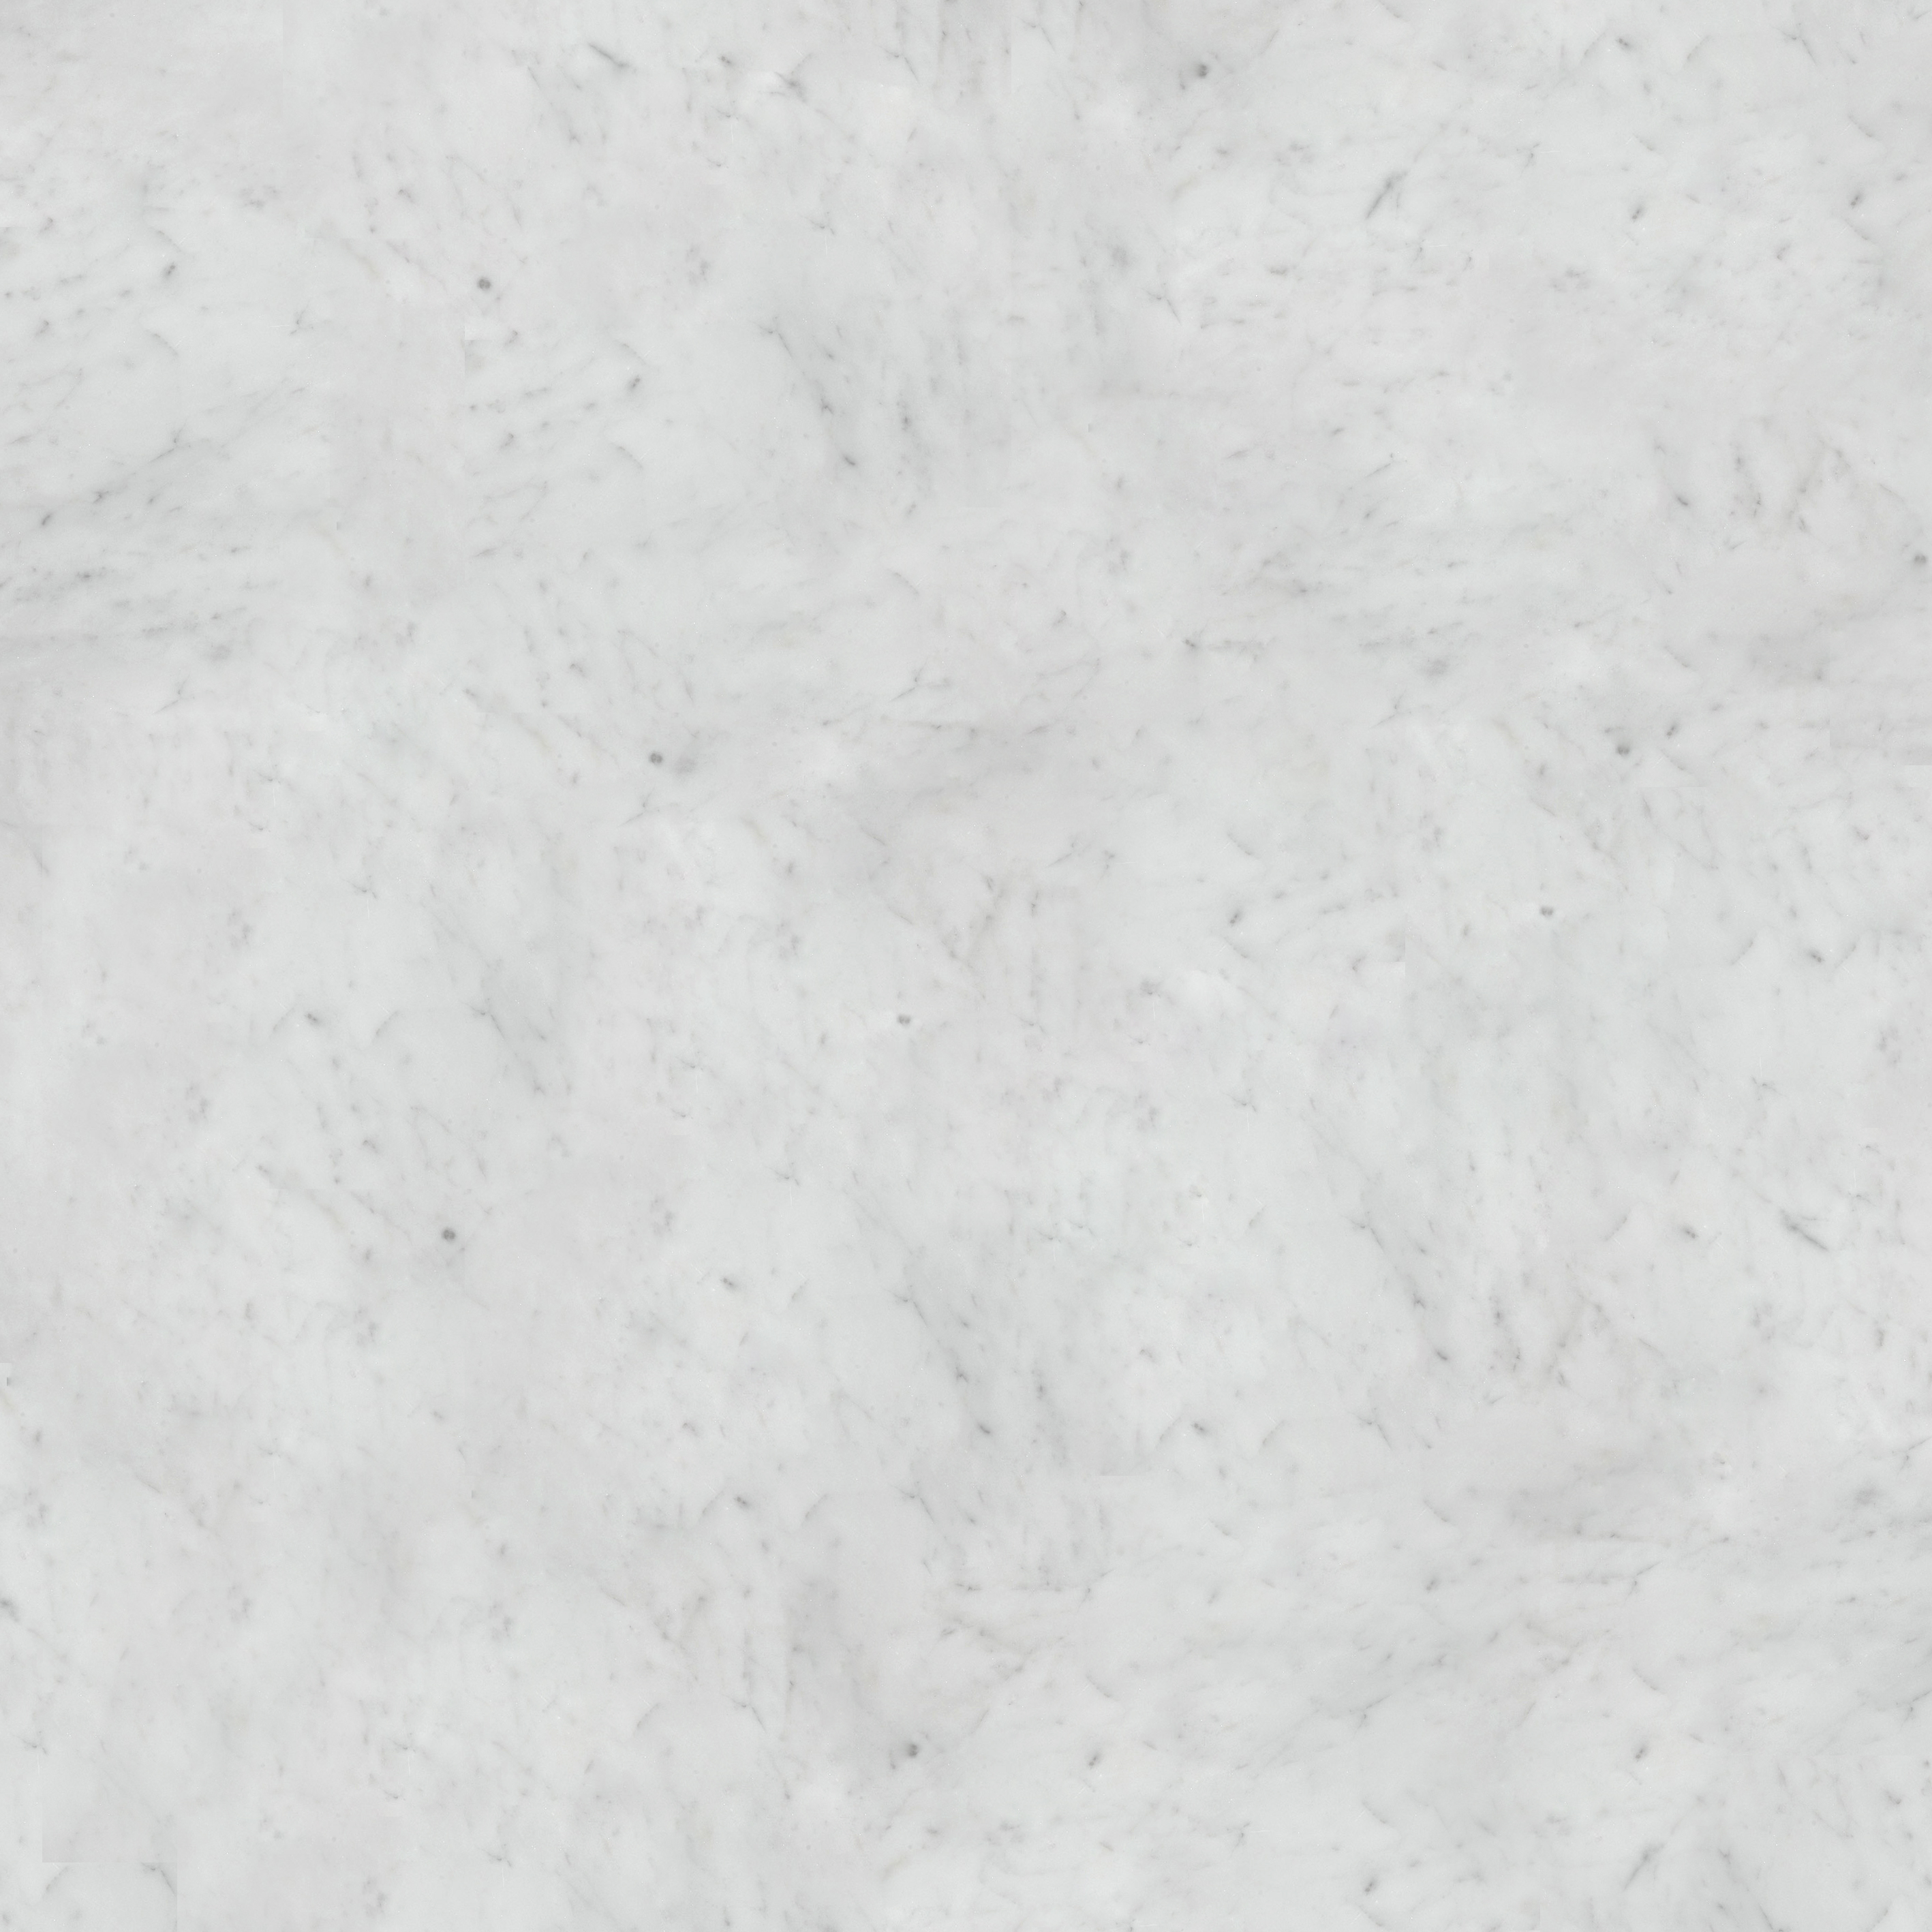 Texture White Marble X3cbx3ewhite Marble Texturex3cbx3e Seamless Download